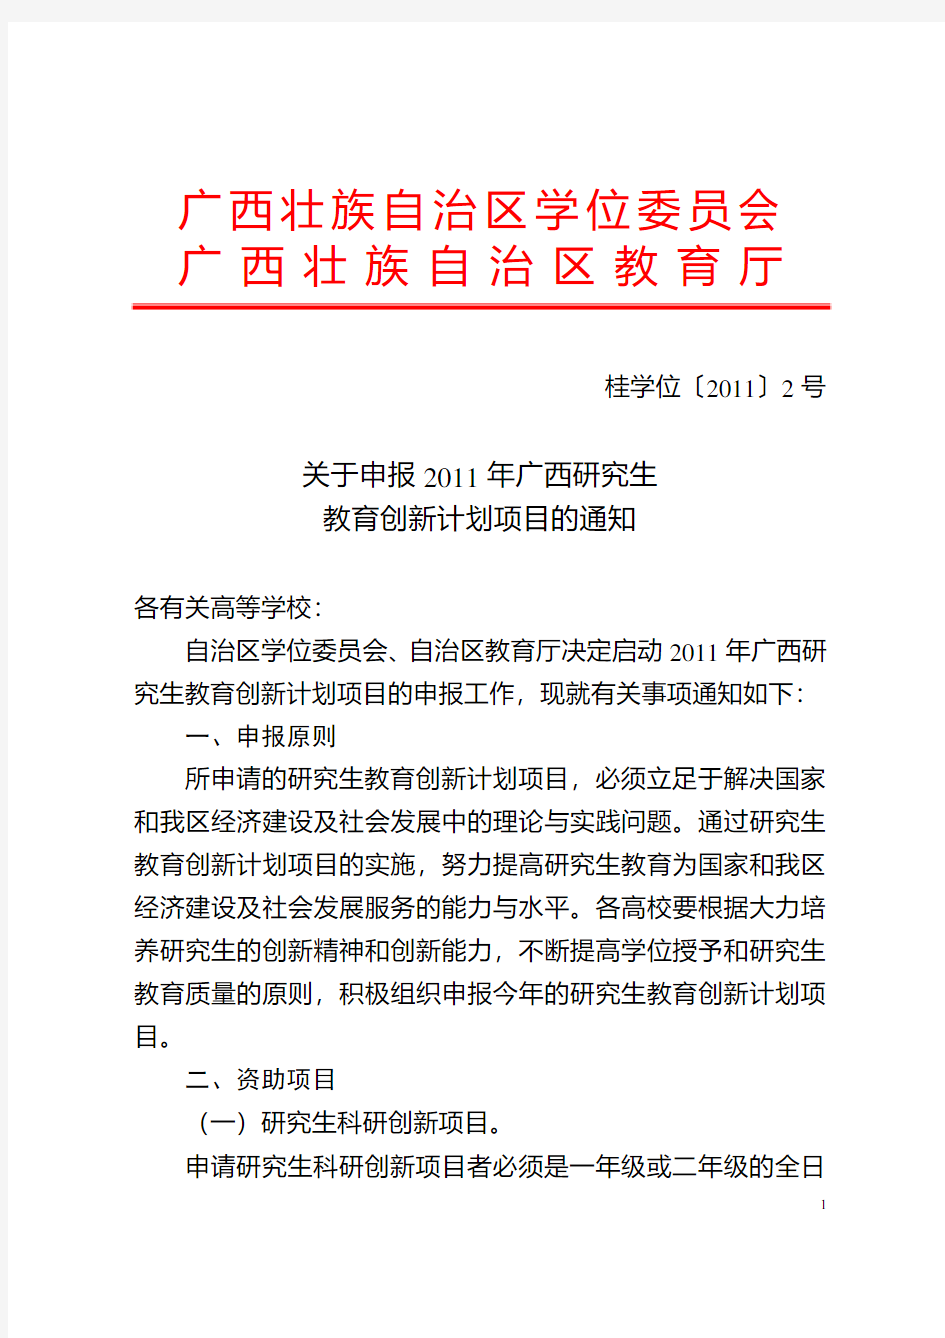 桂学位〔2011〕2号关于申报2011年广西研究生教育创新计划项目的通知